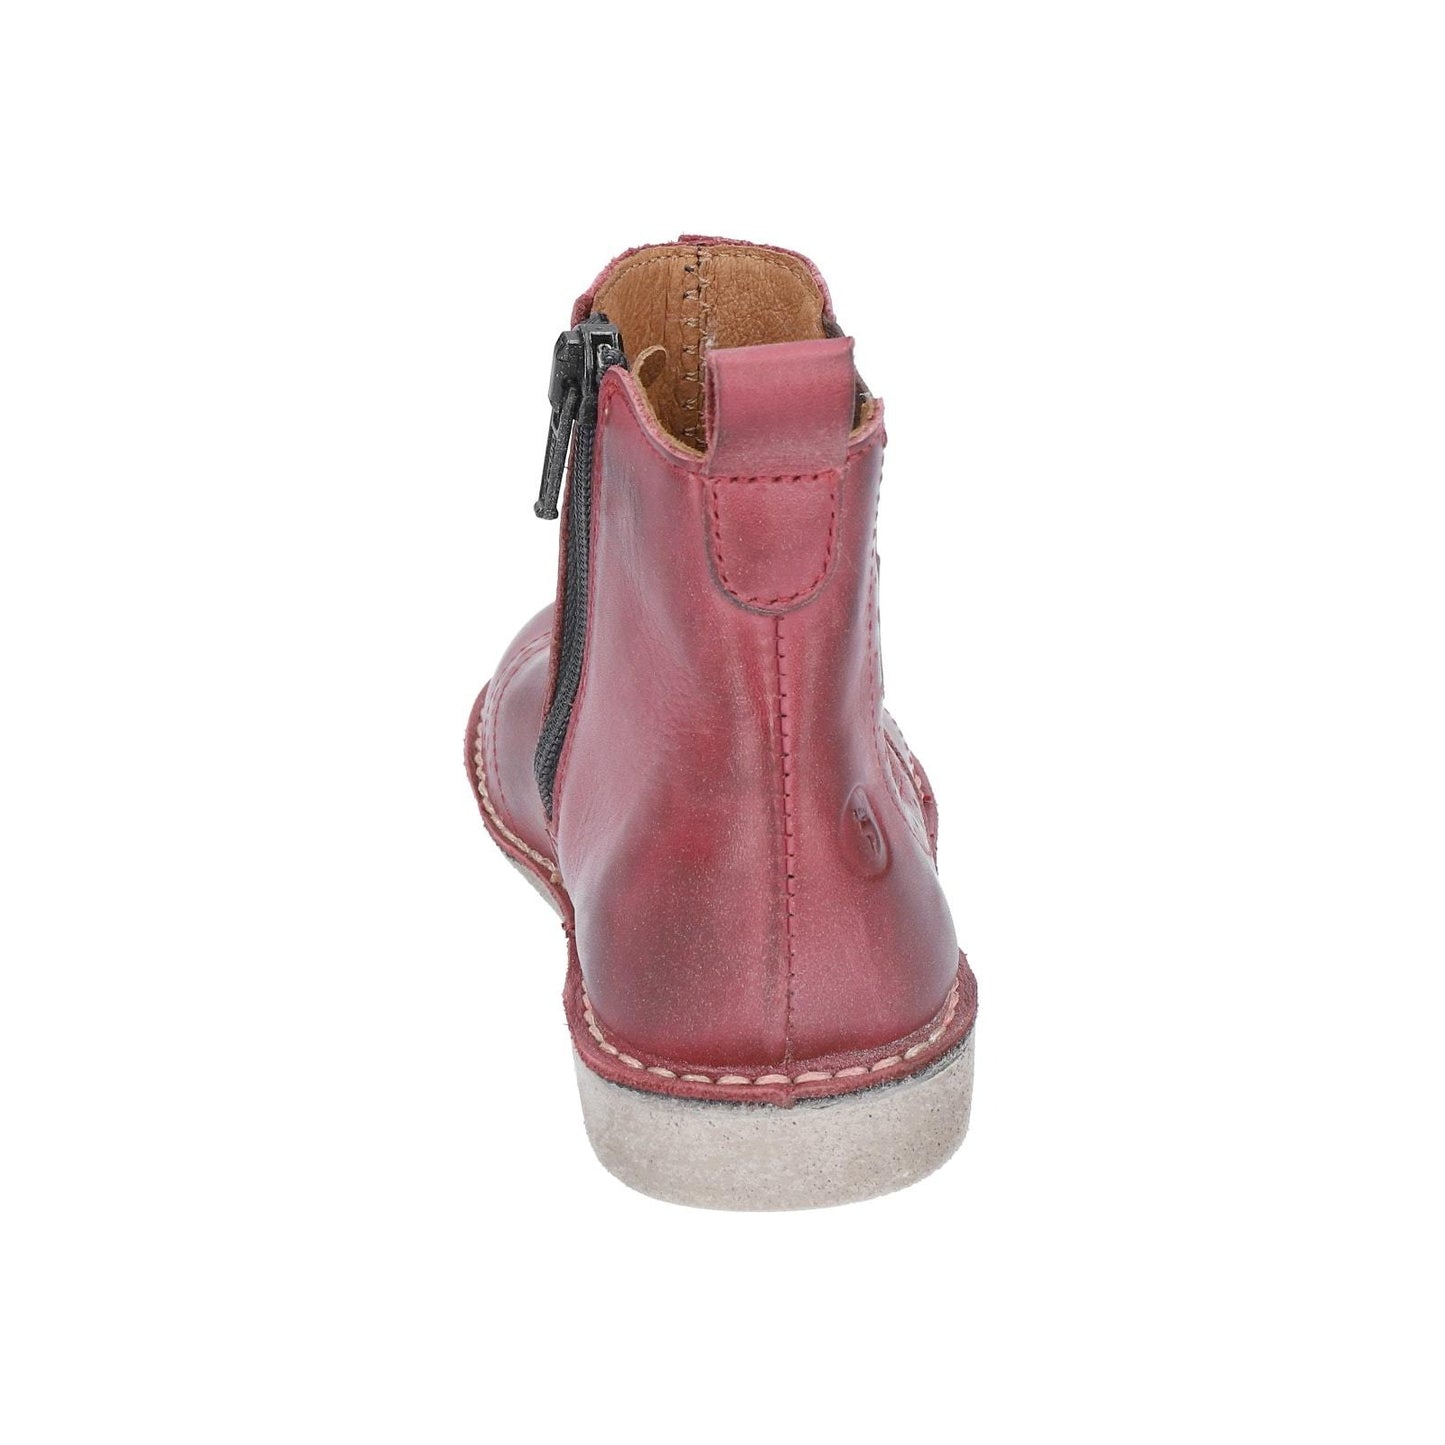 Dallas Chelsea Boot in Dark Fuchsia Leather